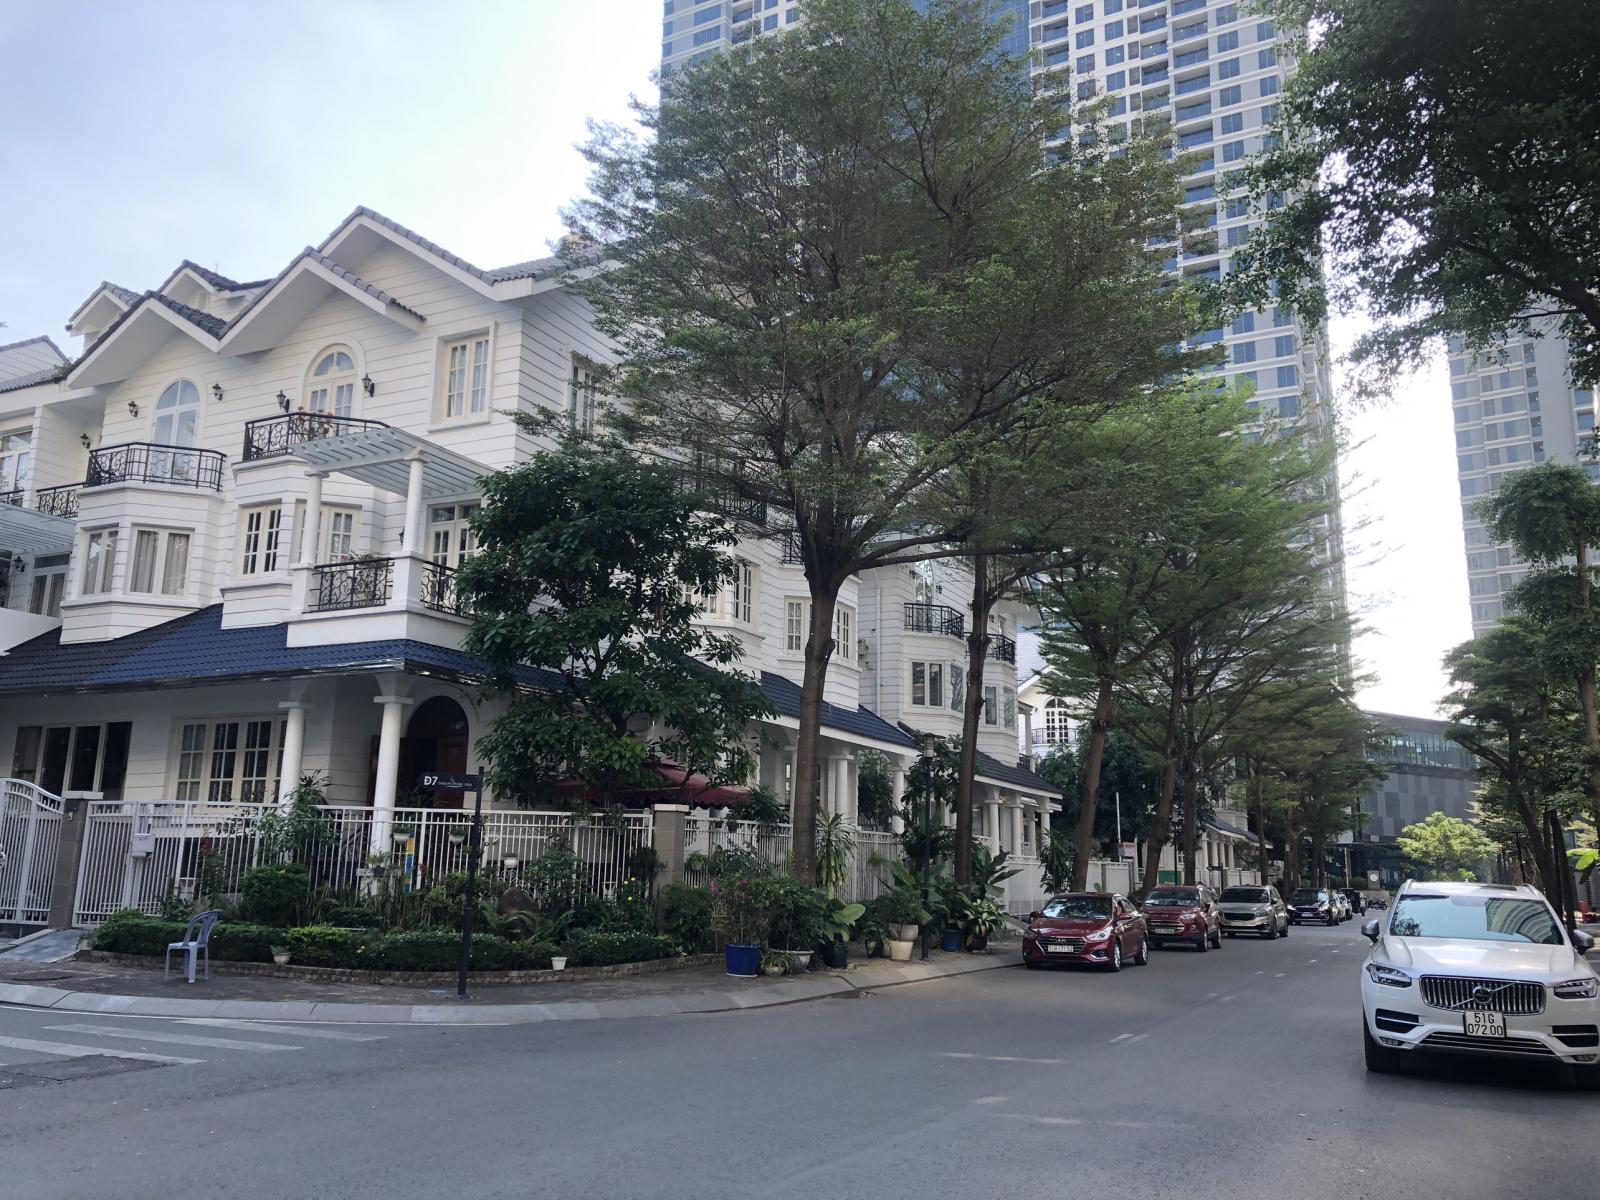 Bán biệt thự Saigon Pearl Bình Thạnh, DT 218m2, góc 2 mặt tiền, nội thất đẹp, giá tốt 85 tỷ